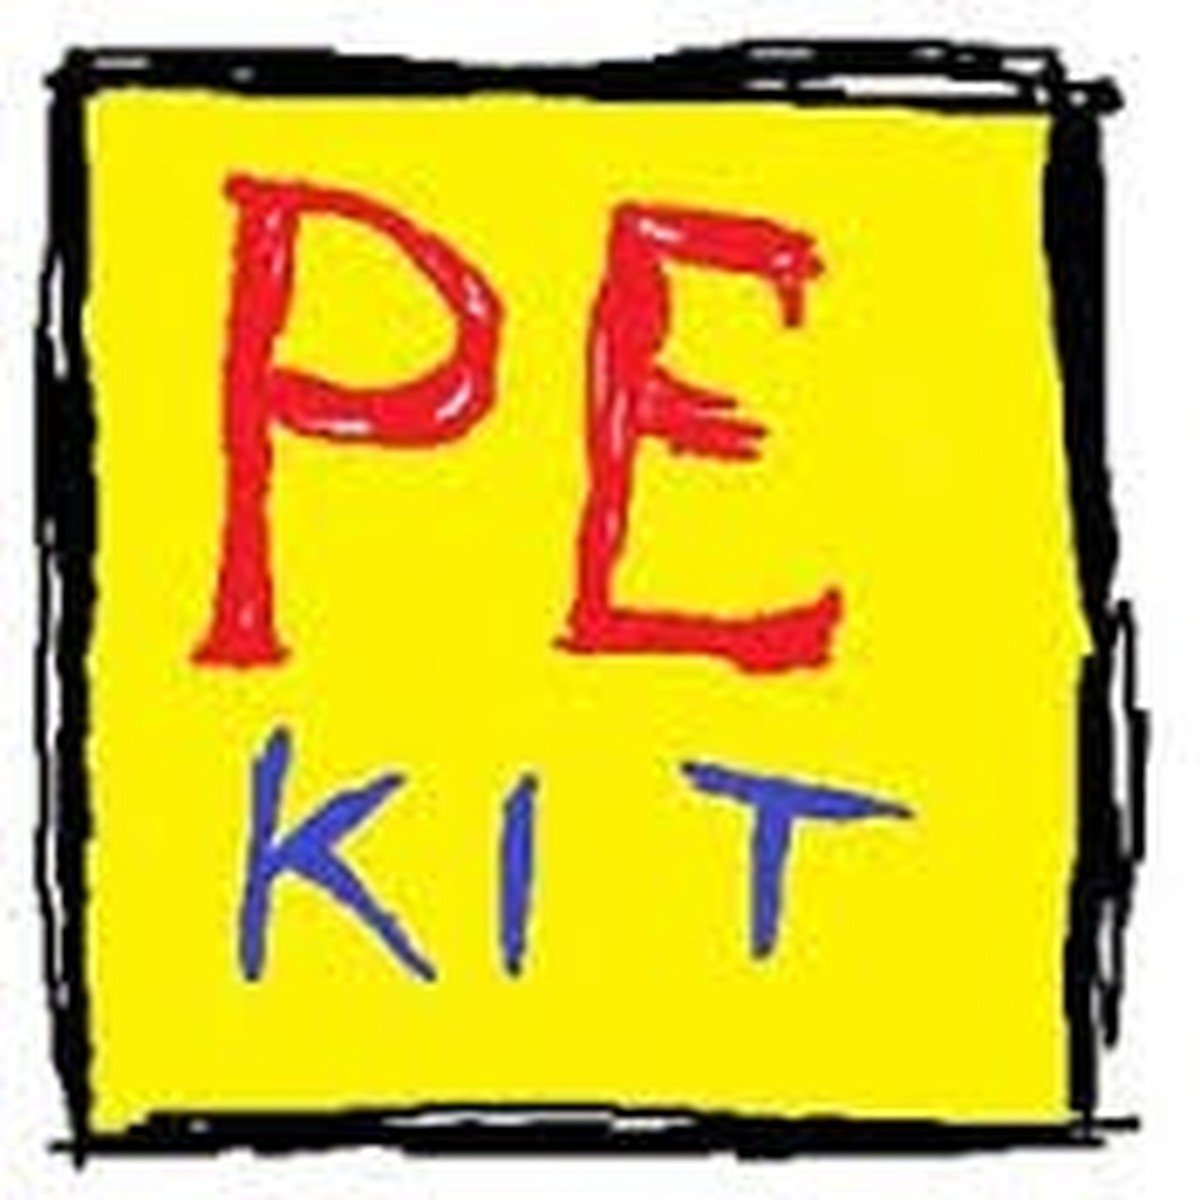 PE kit image